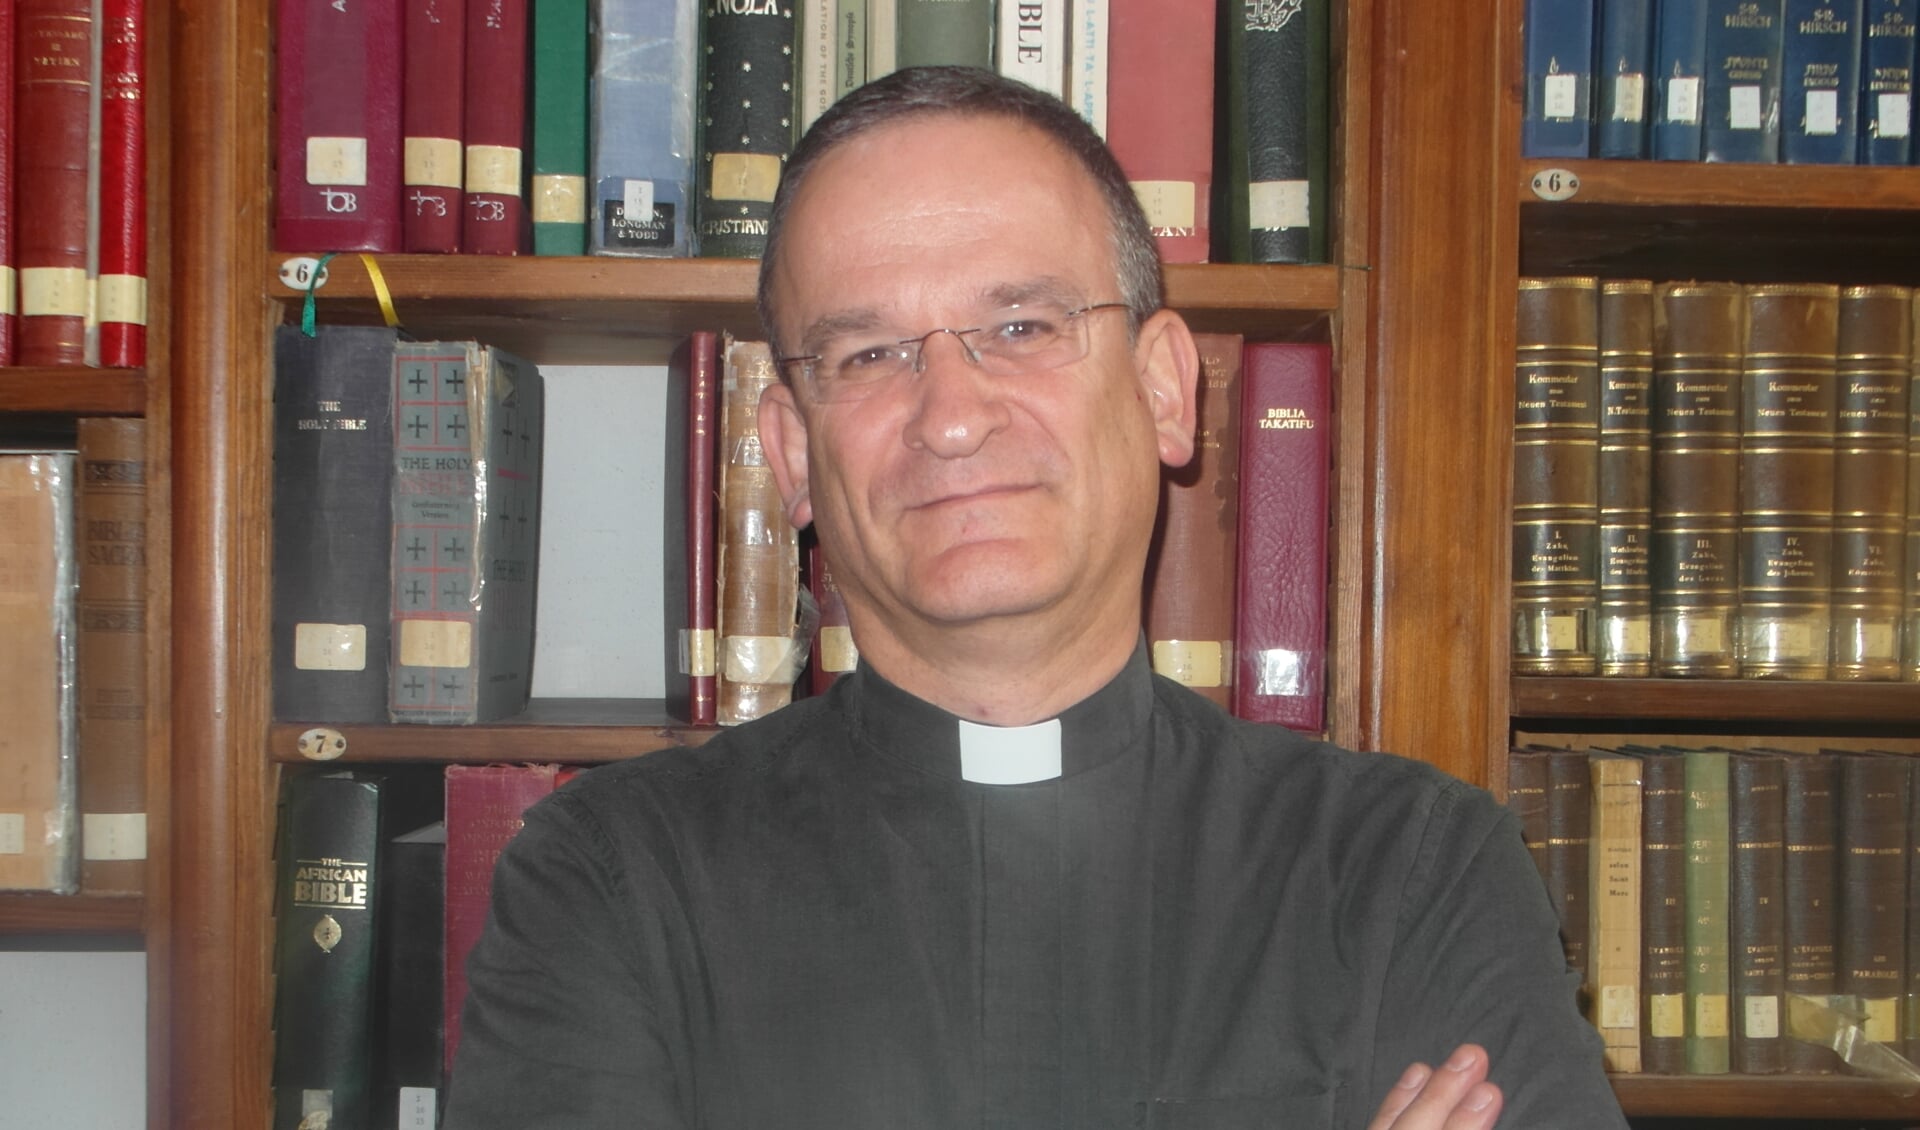 De joodse jezuïet David Neuhaus in de bibliotheek van het Pauselijk Bijbelinstituut in Jeruzalem waarvan hij momenteel interim-directeur is.